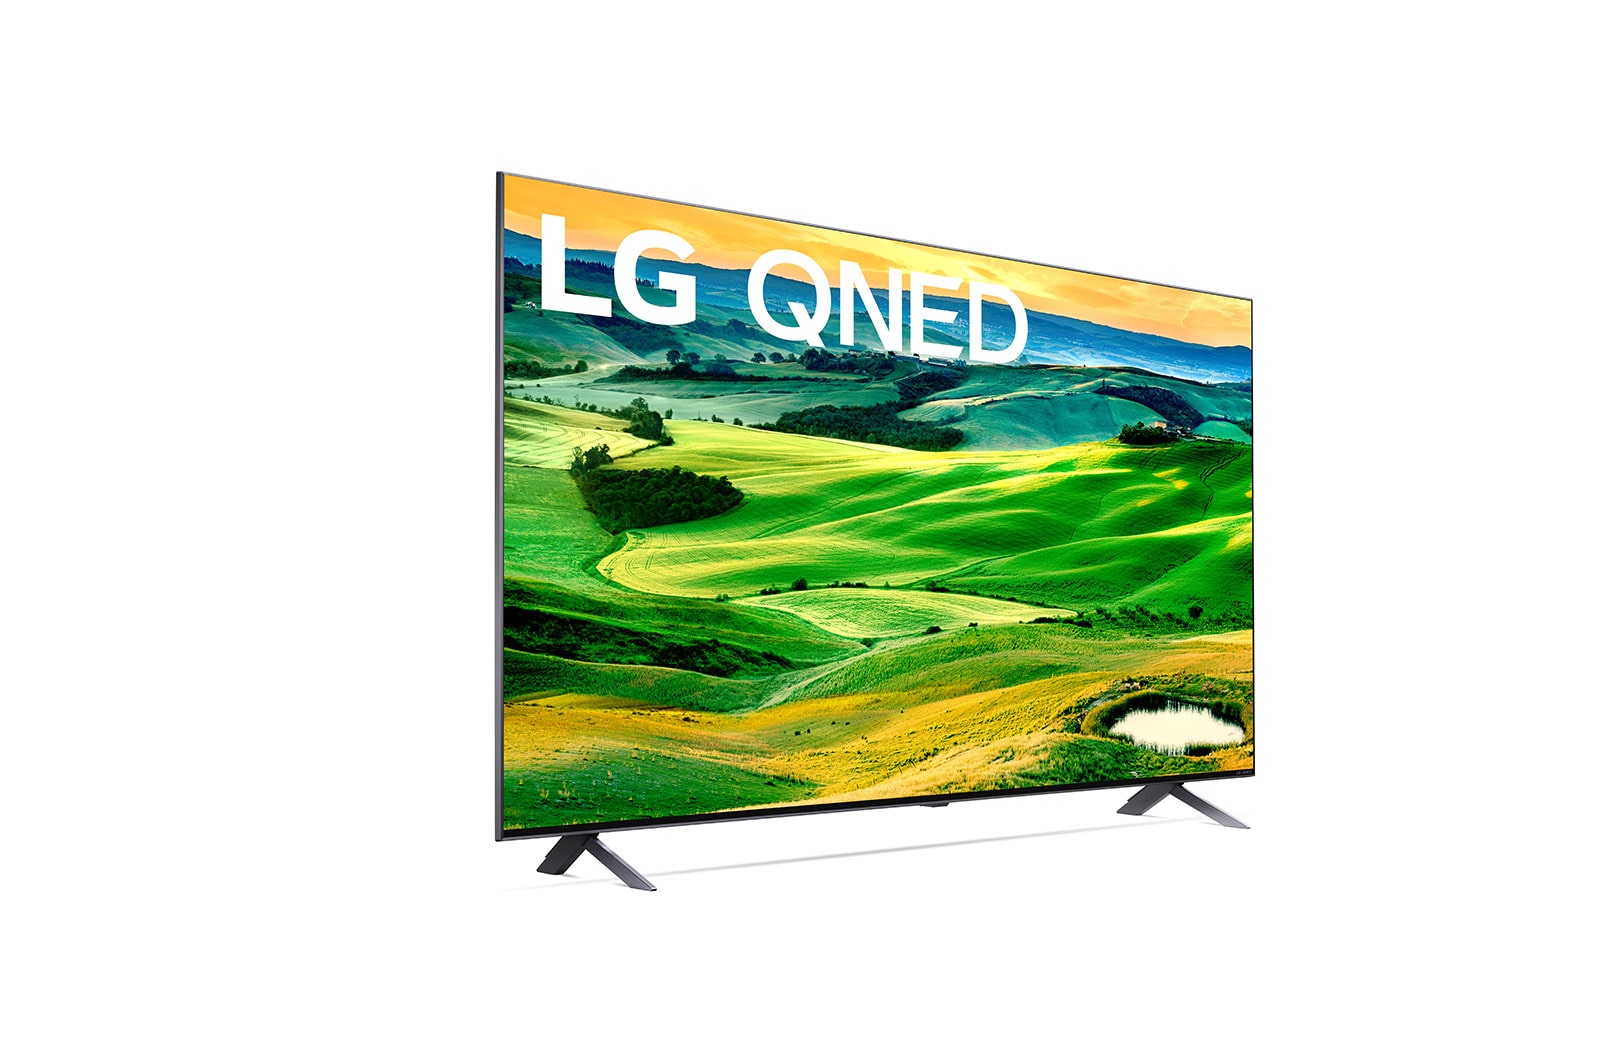 LG QNED80 55 inch QNED TV - 55QNED80SQA | LG Australia